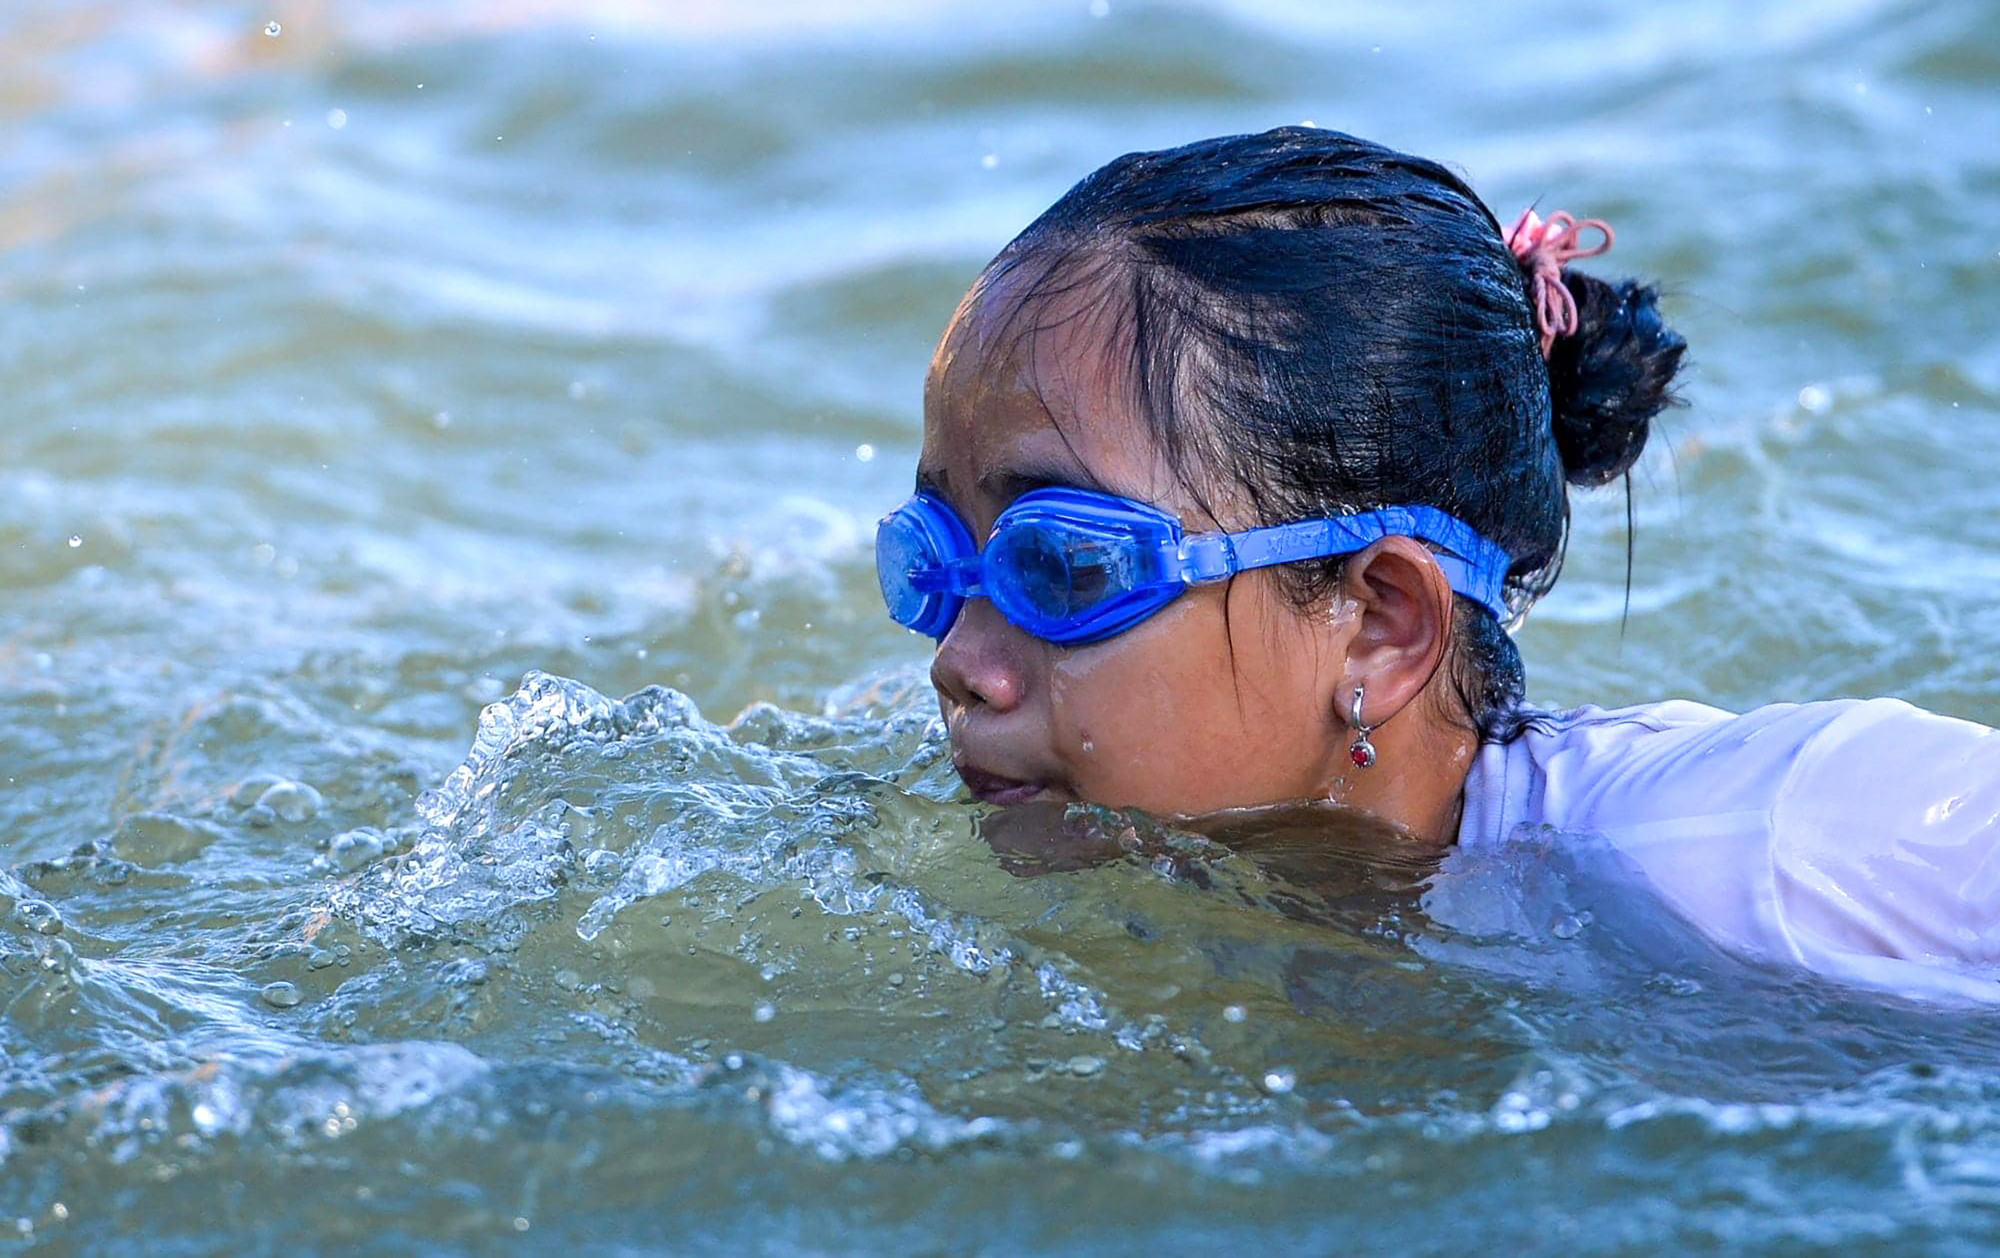 Sau 10-15 buổi học, phần lớn các em đều có thể tự tin và bơi thành thạo dưới nước